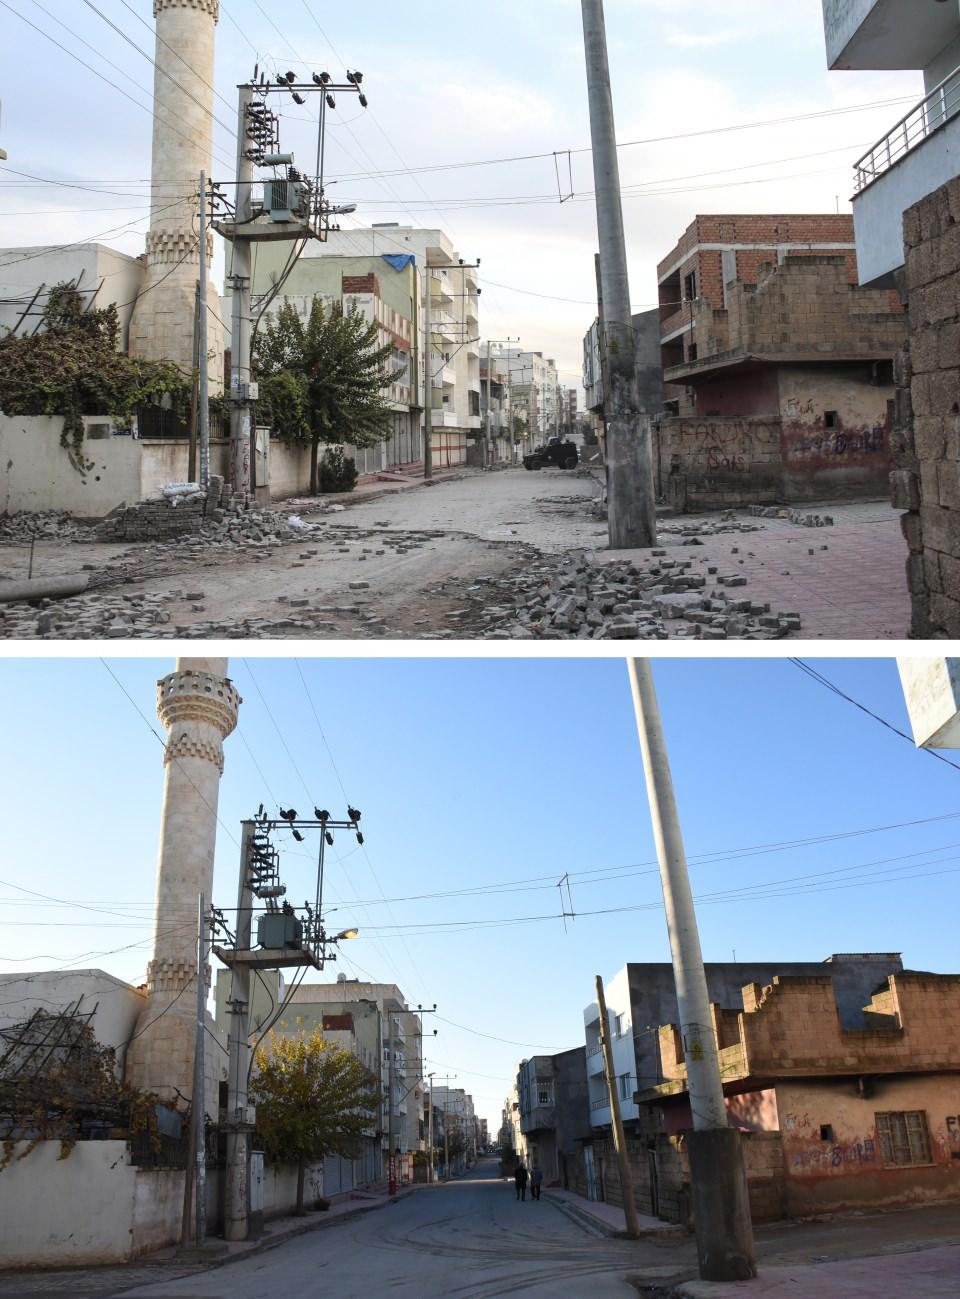 <p>PKK'lı teröristlerin 3 yıl önce gerçekleştirdiği saldırılar sonucu yıkıma uğrattığı Diyarbakır, Mardin, Şırnak ile Hakkari devlet eliyle yürütülen çalışmalarla yeniden ayağa kaldırıldı. Mardin'in Nusaybin ilçesinde PKK'lı teröristlerce cadde ve sokaklar ile kazılan çukurlara tuzaklanan patlayıcıların infilak ettirilmesi sonucu bazı ev ve iş yerlerinin yanı sıra su ve elektrik hatları da zarar gördü. Zarar gören yerler arasında bulunan Sakarya Caddesindeki tahribat devlet eliyle yürütülen çalışmalarla giderildi.</p>

<p> </p>
